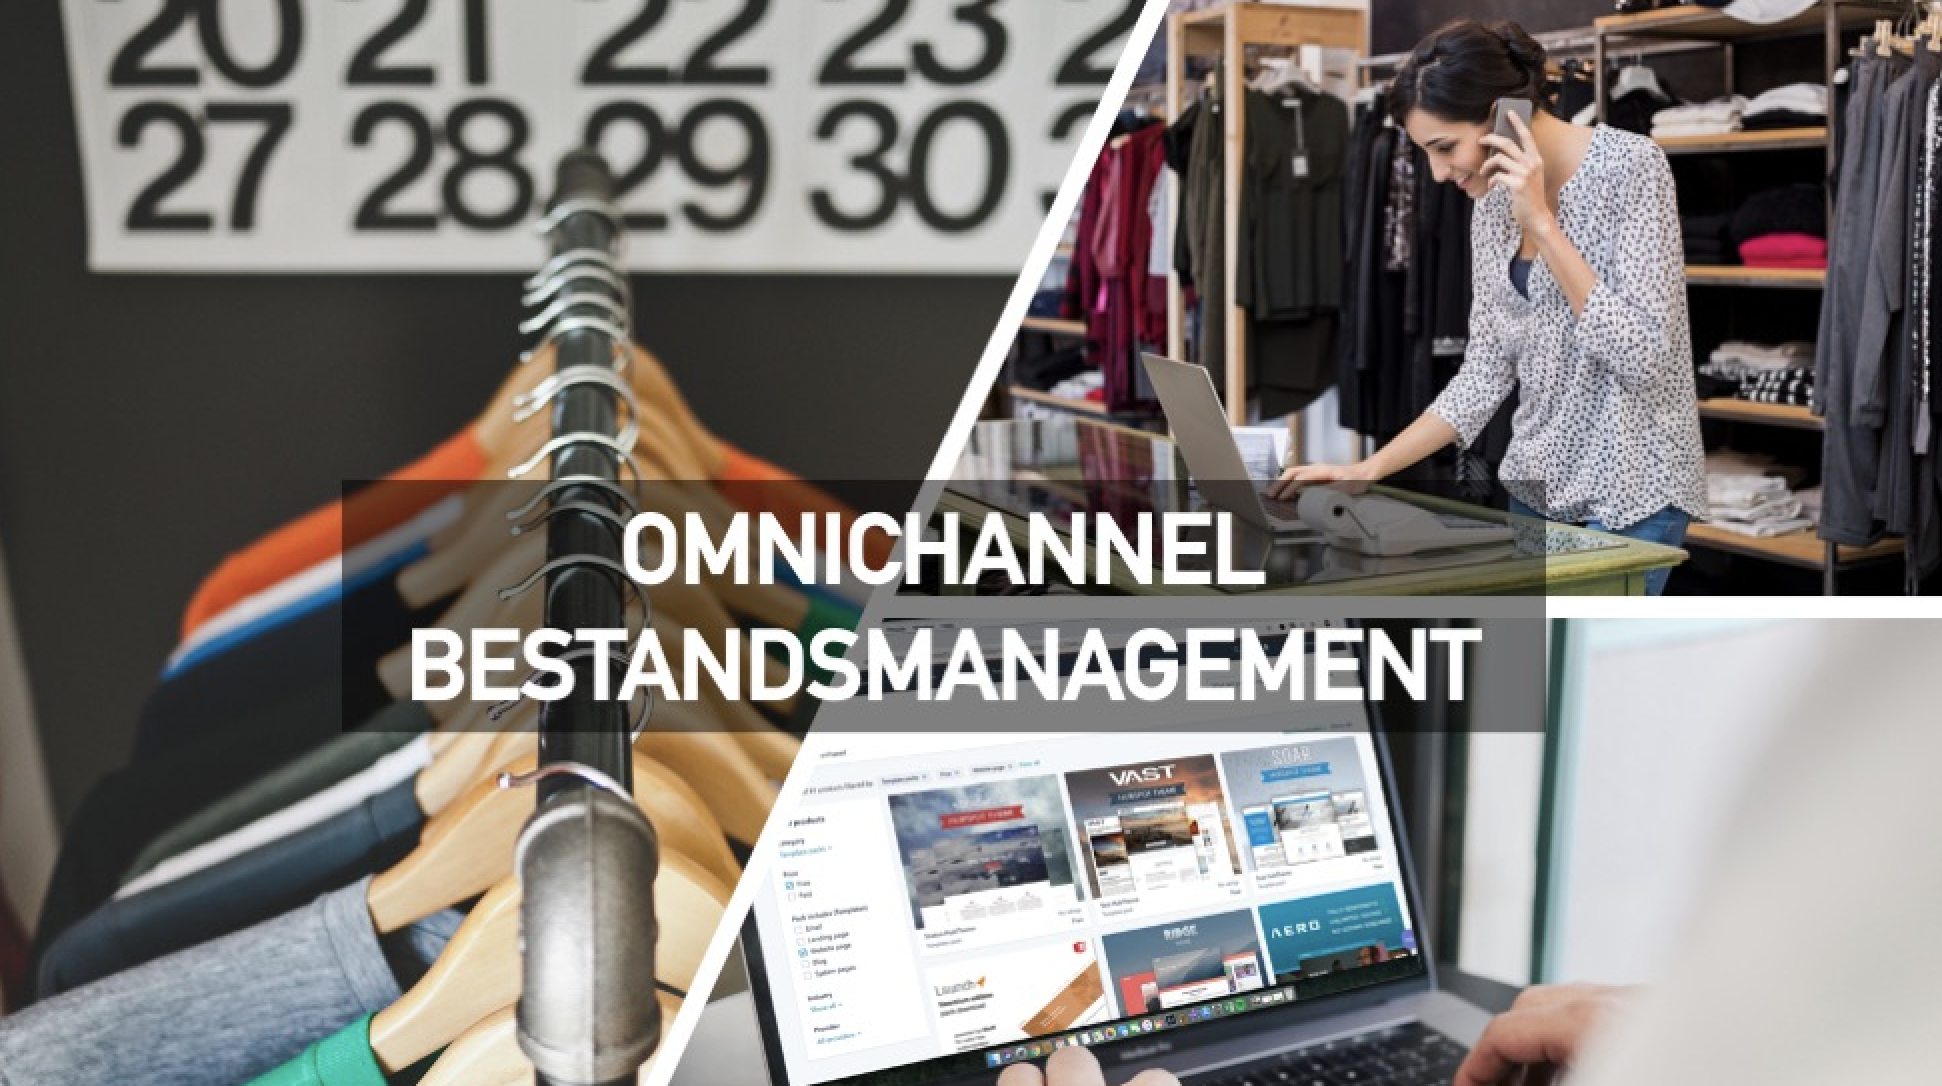 Omnichannel_Bestandsmanagement_Warenwirtschaft_Marketing_Transformation